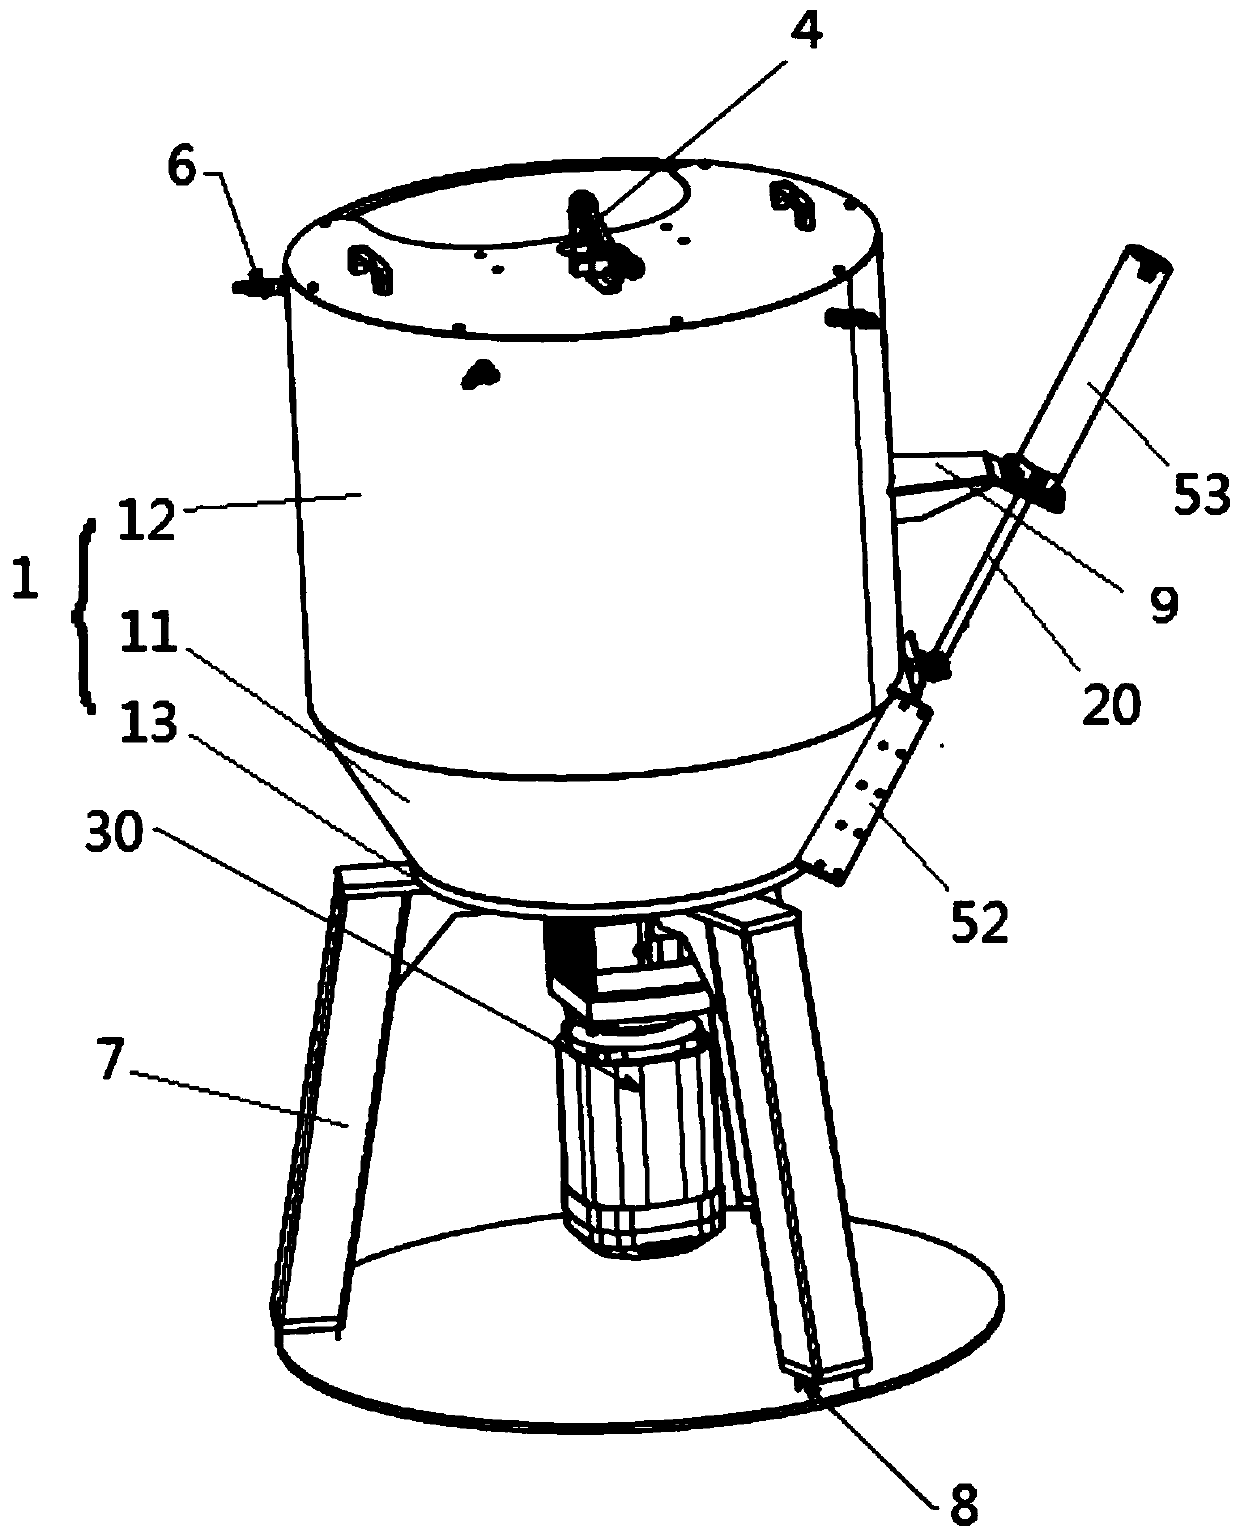 A tea rehydration mixer